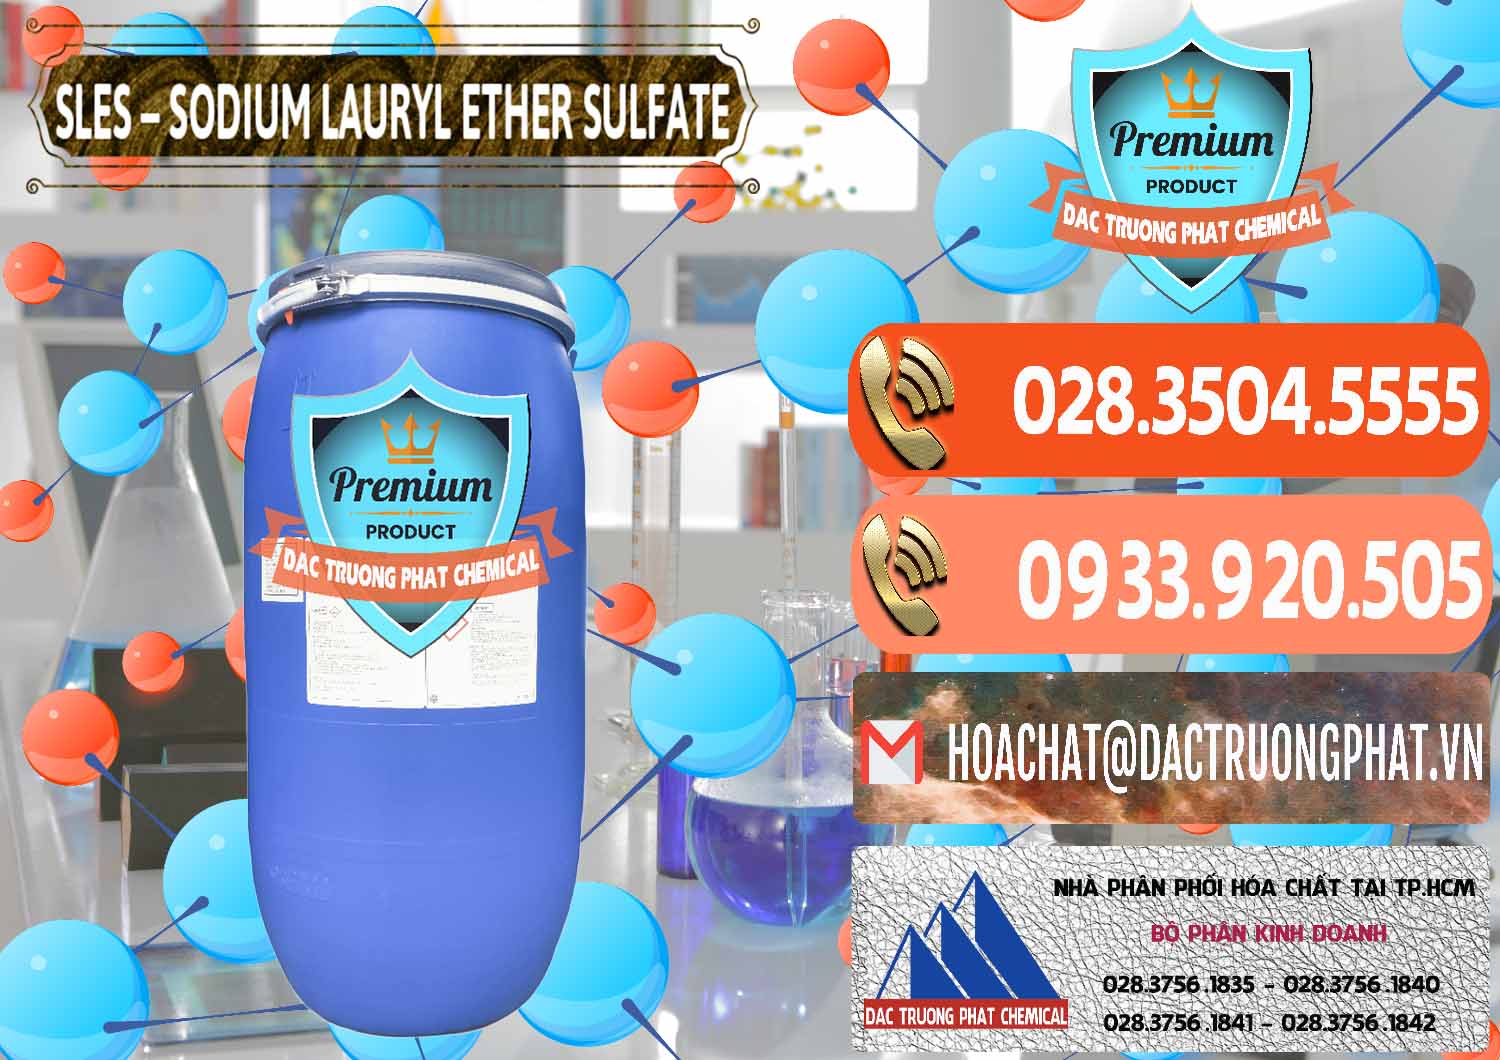 Đơn vị chuyên cung cấp ( bán ) Chất Tạo Bọt Sles - Sodium Lauryl Ether Sulphate Kao Indonesia - 0046 - Công ty kinh doanh và phân phối hóa chất tại TP.HCM - hoachatmientay.com